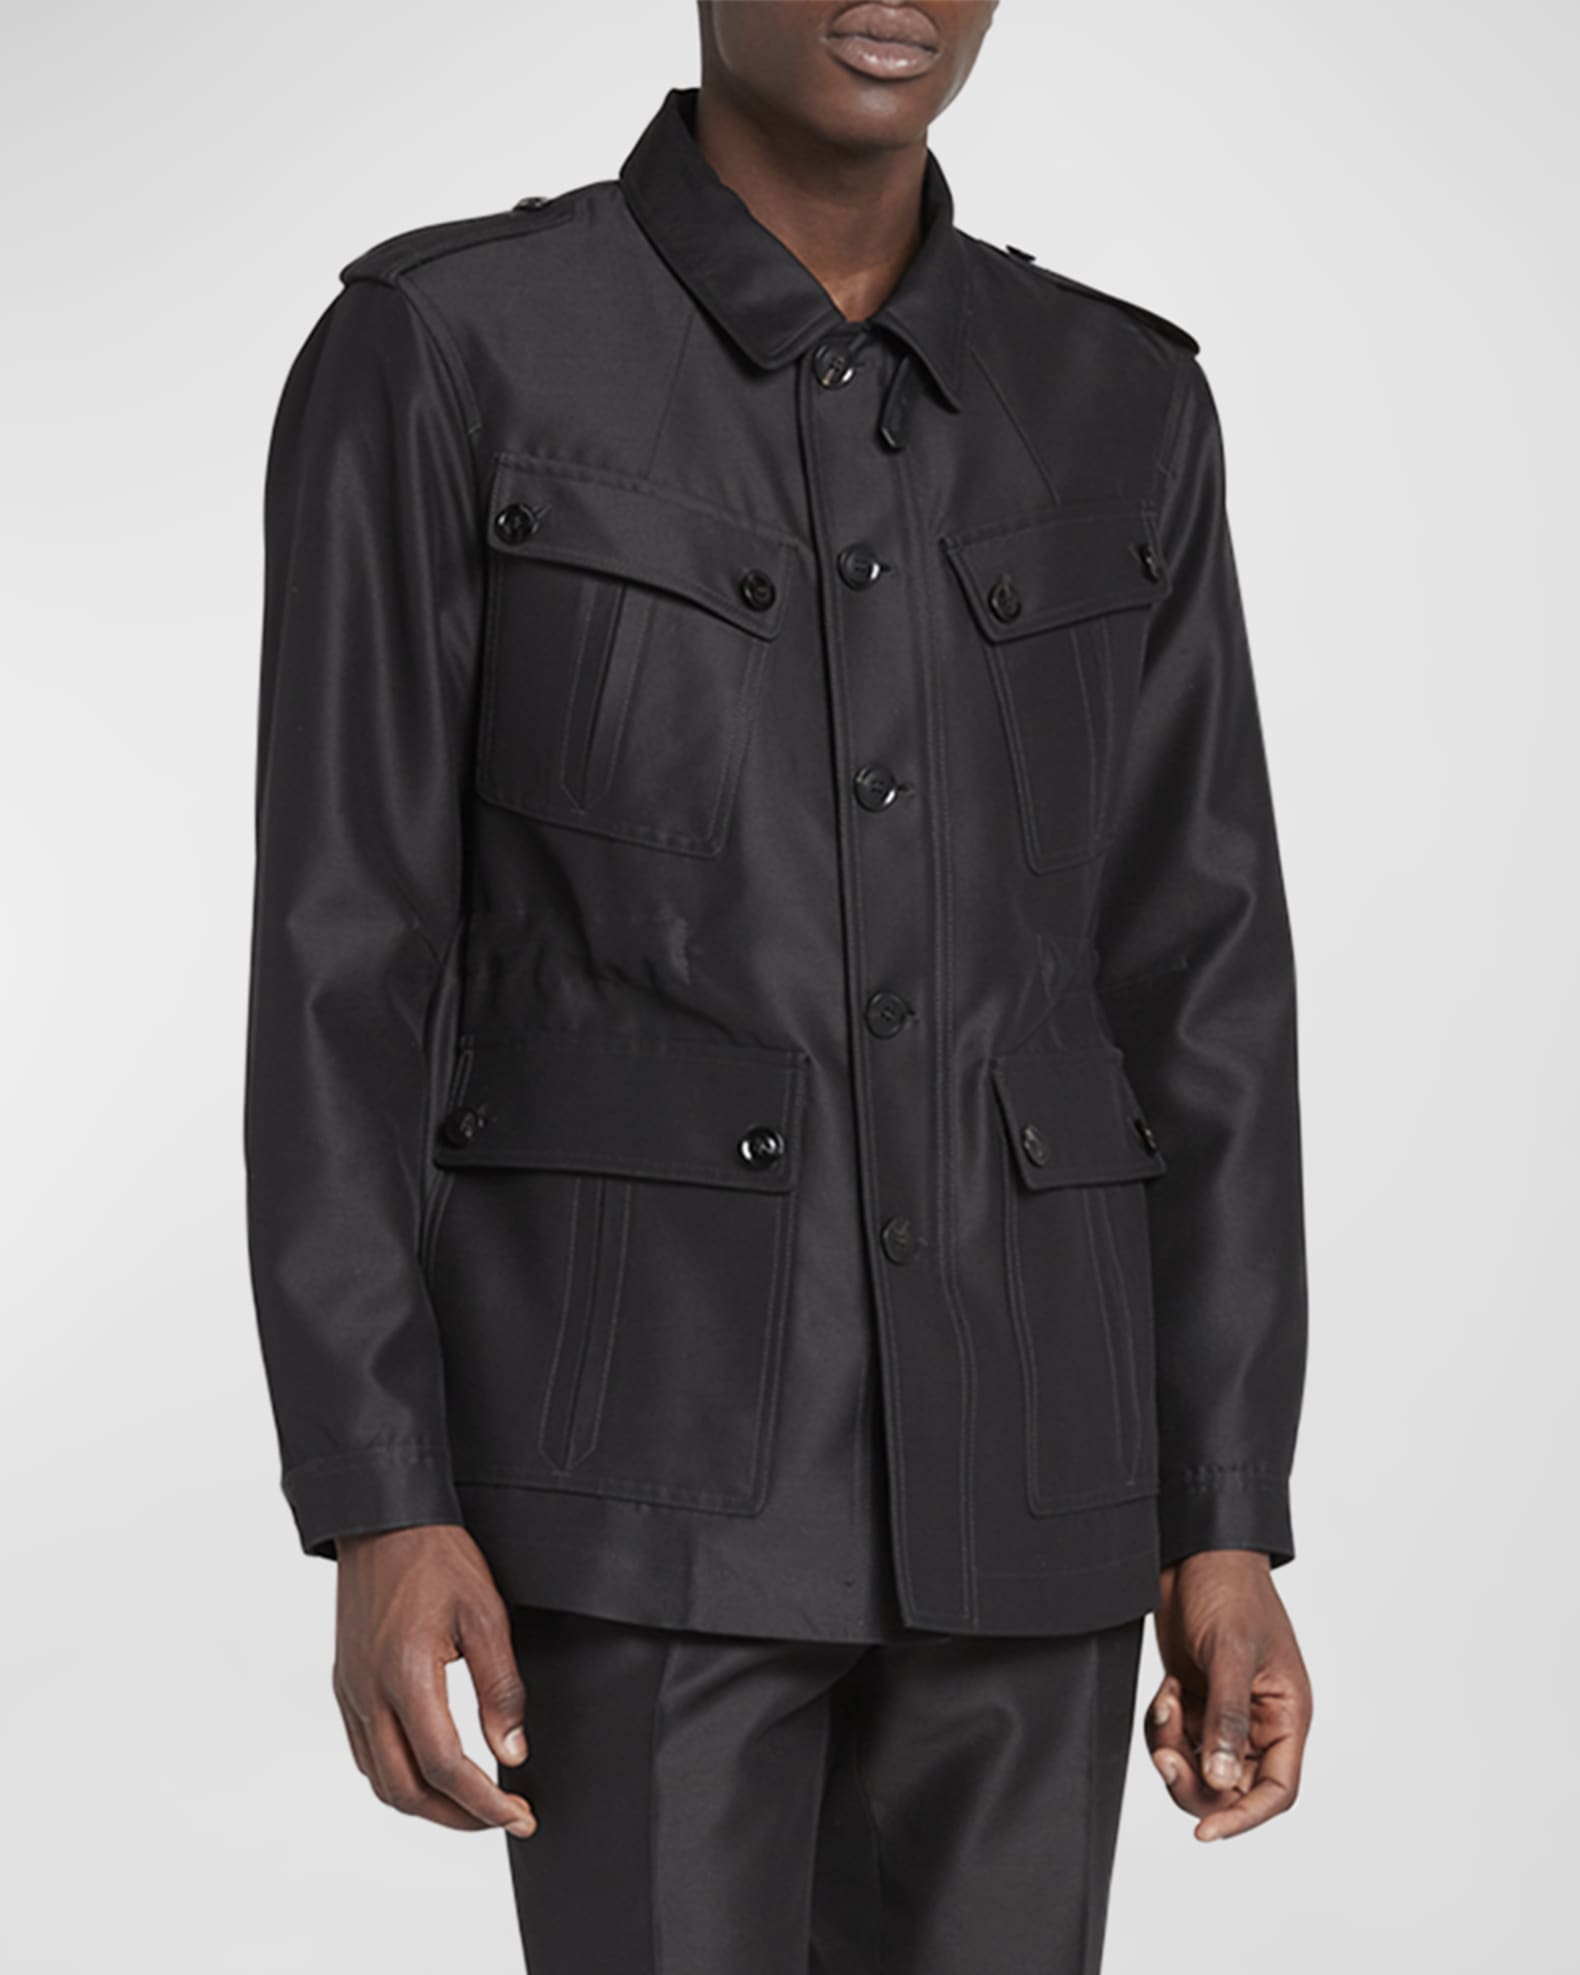 TOM FORD Men's Wool-Silk Faille Water-Resistant Field Jacket | Neiman ...